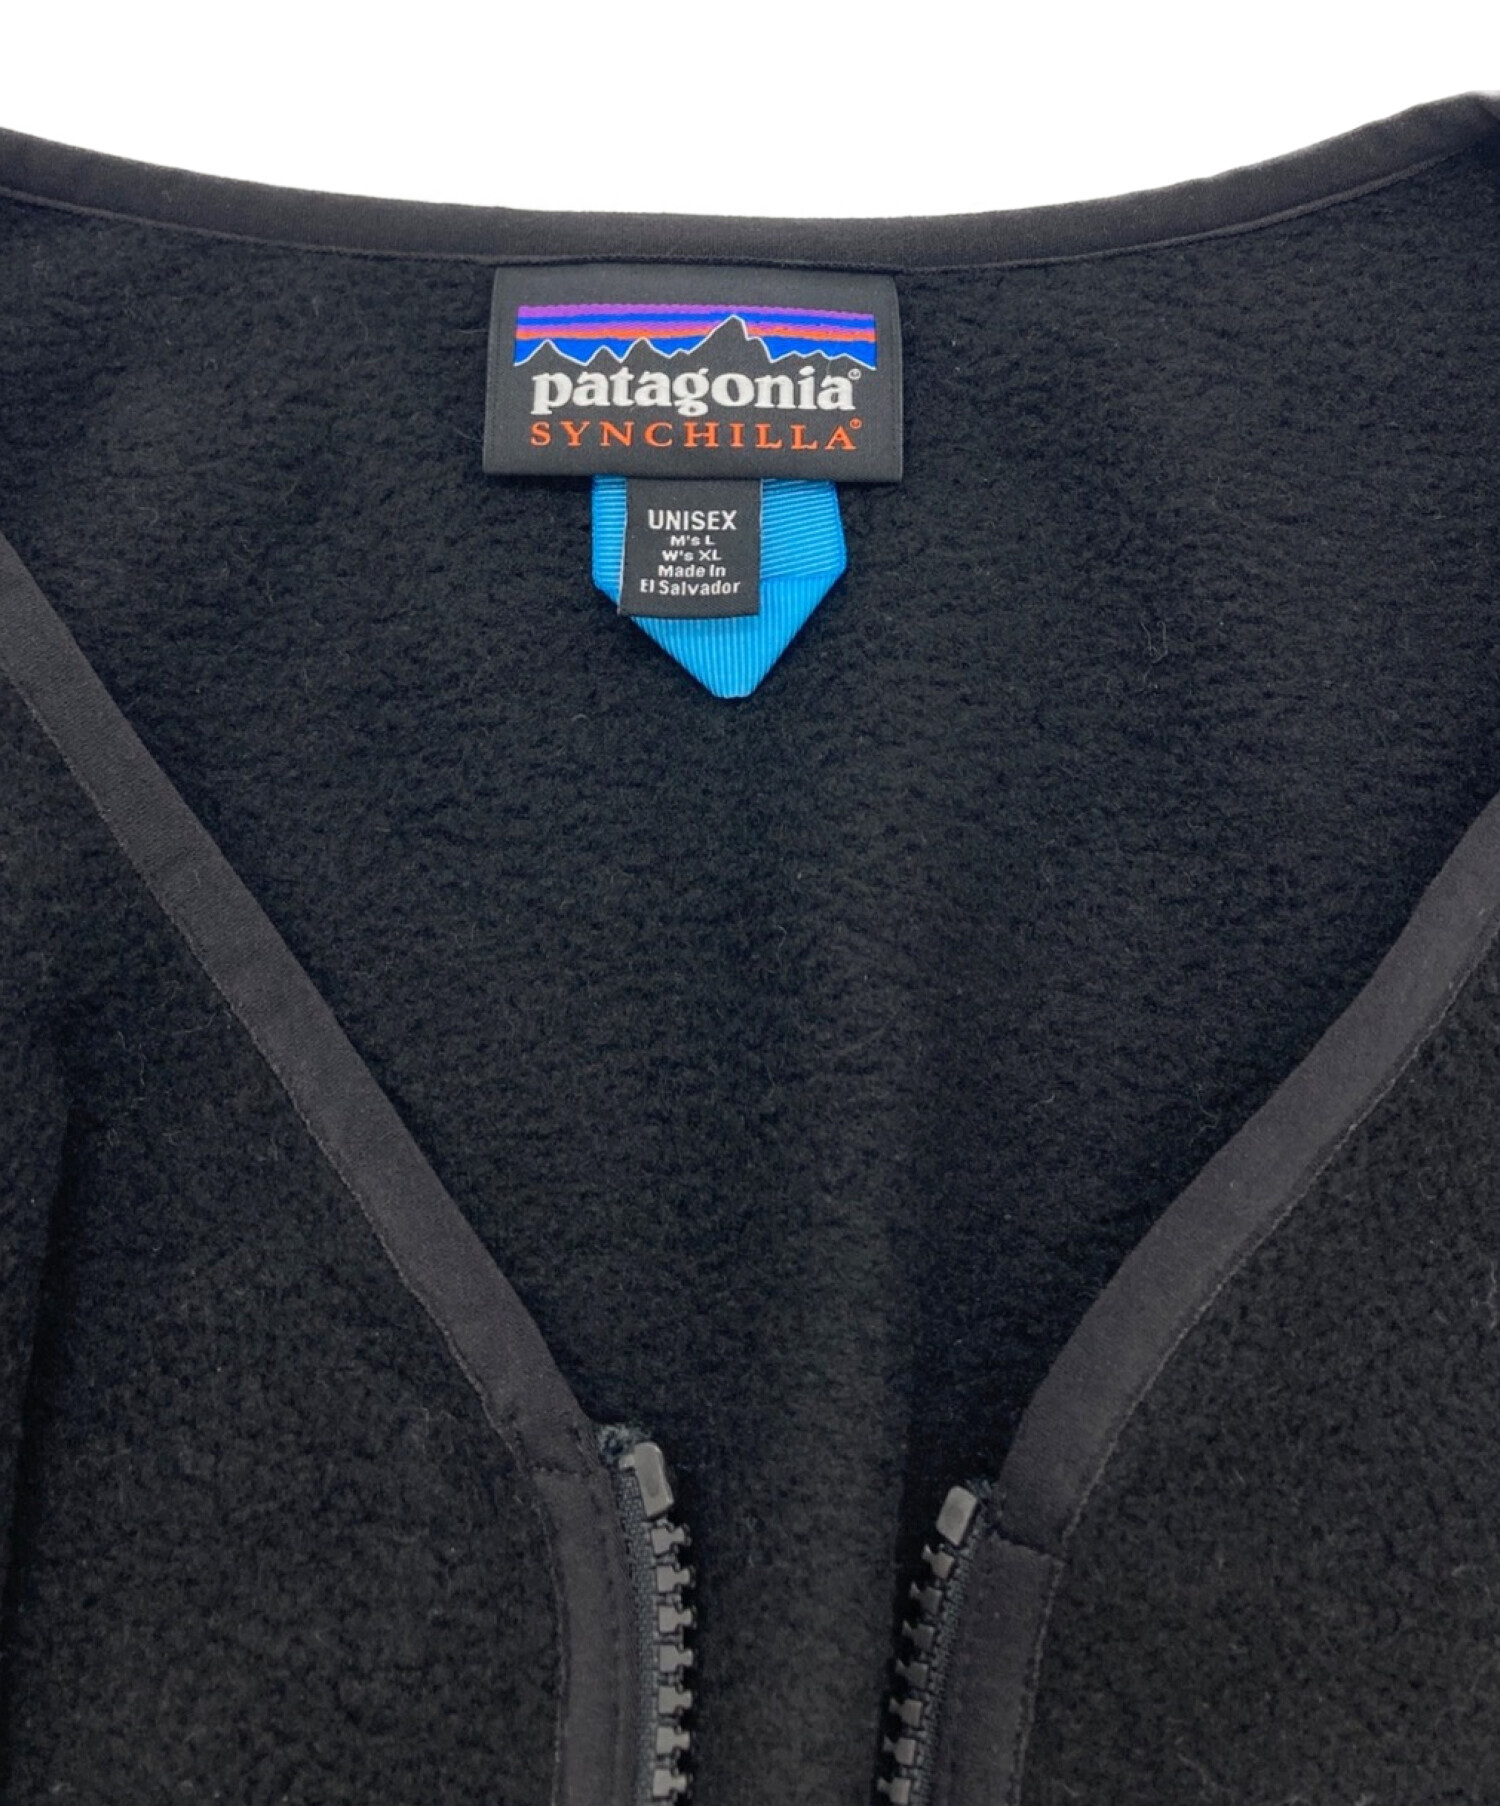 Patagonia (パタゴニア) シンチラカーディガン ブラック サイズ:L